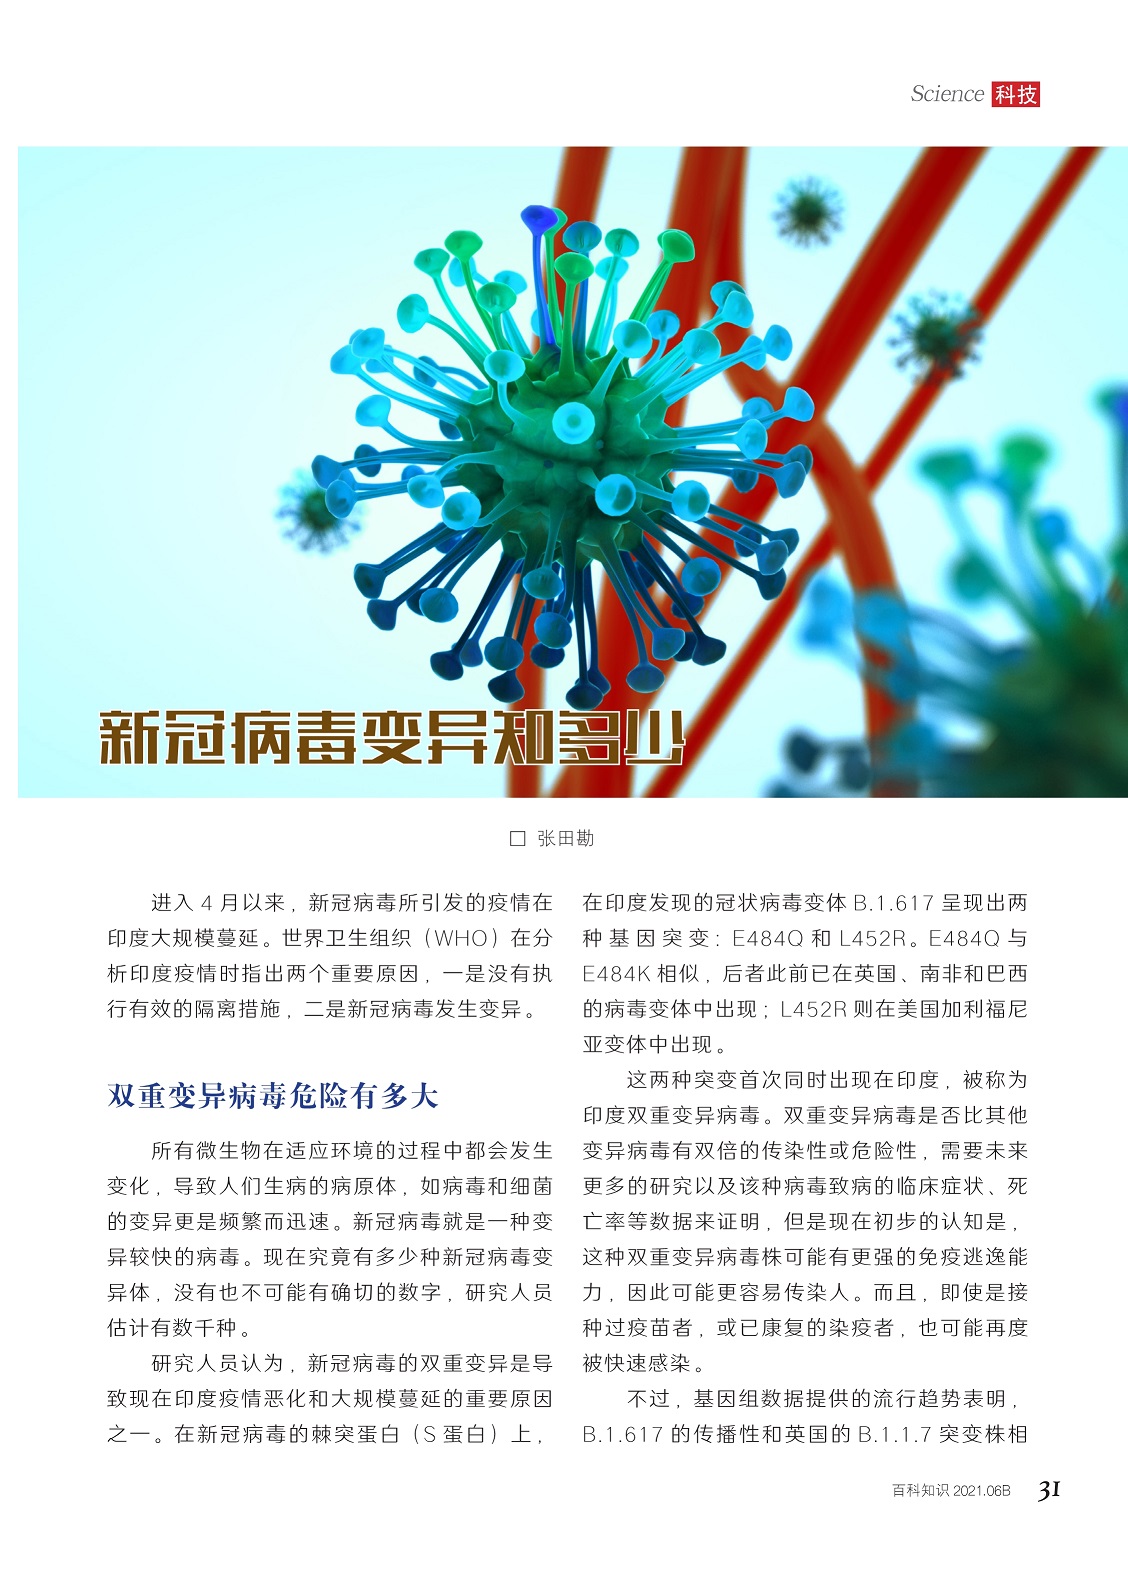 新冠病毒变异株：“超级变体德尔塔克戎”和奥密克戎 我们知道些什么 - BBC News 中文